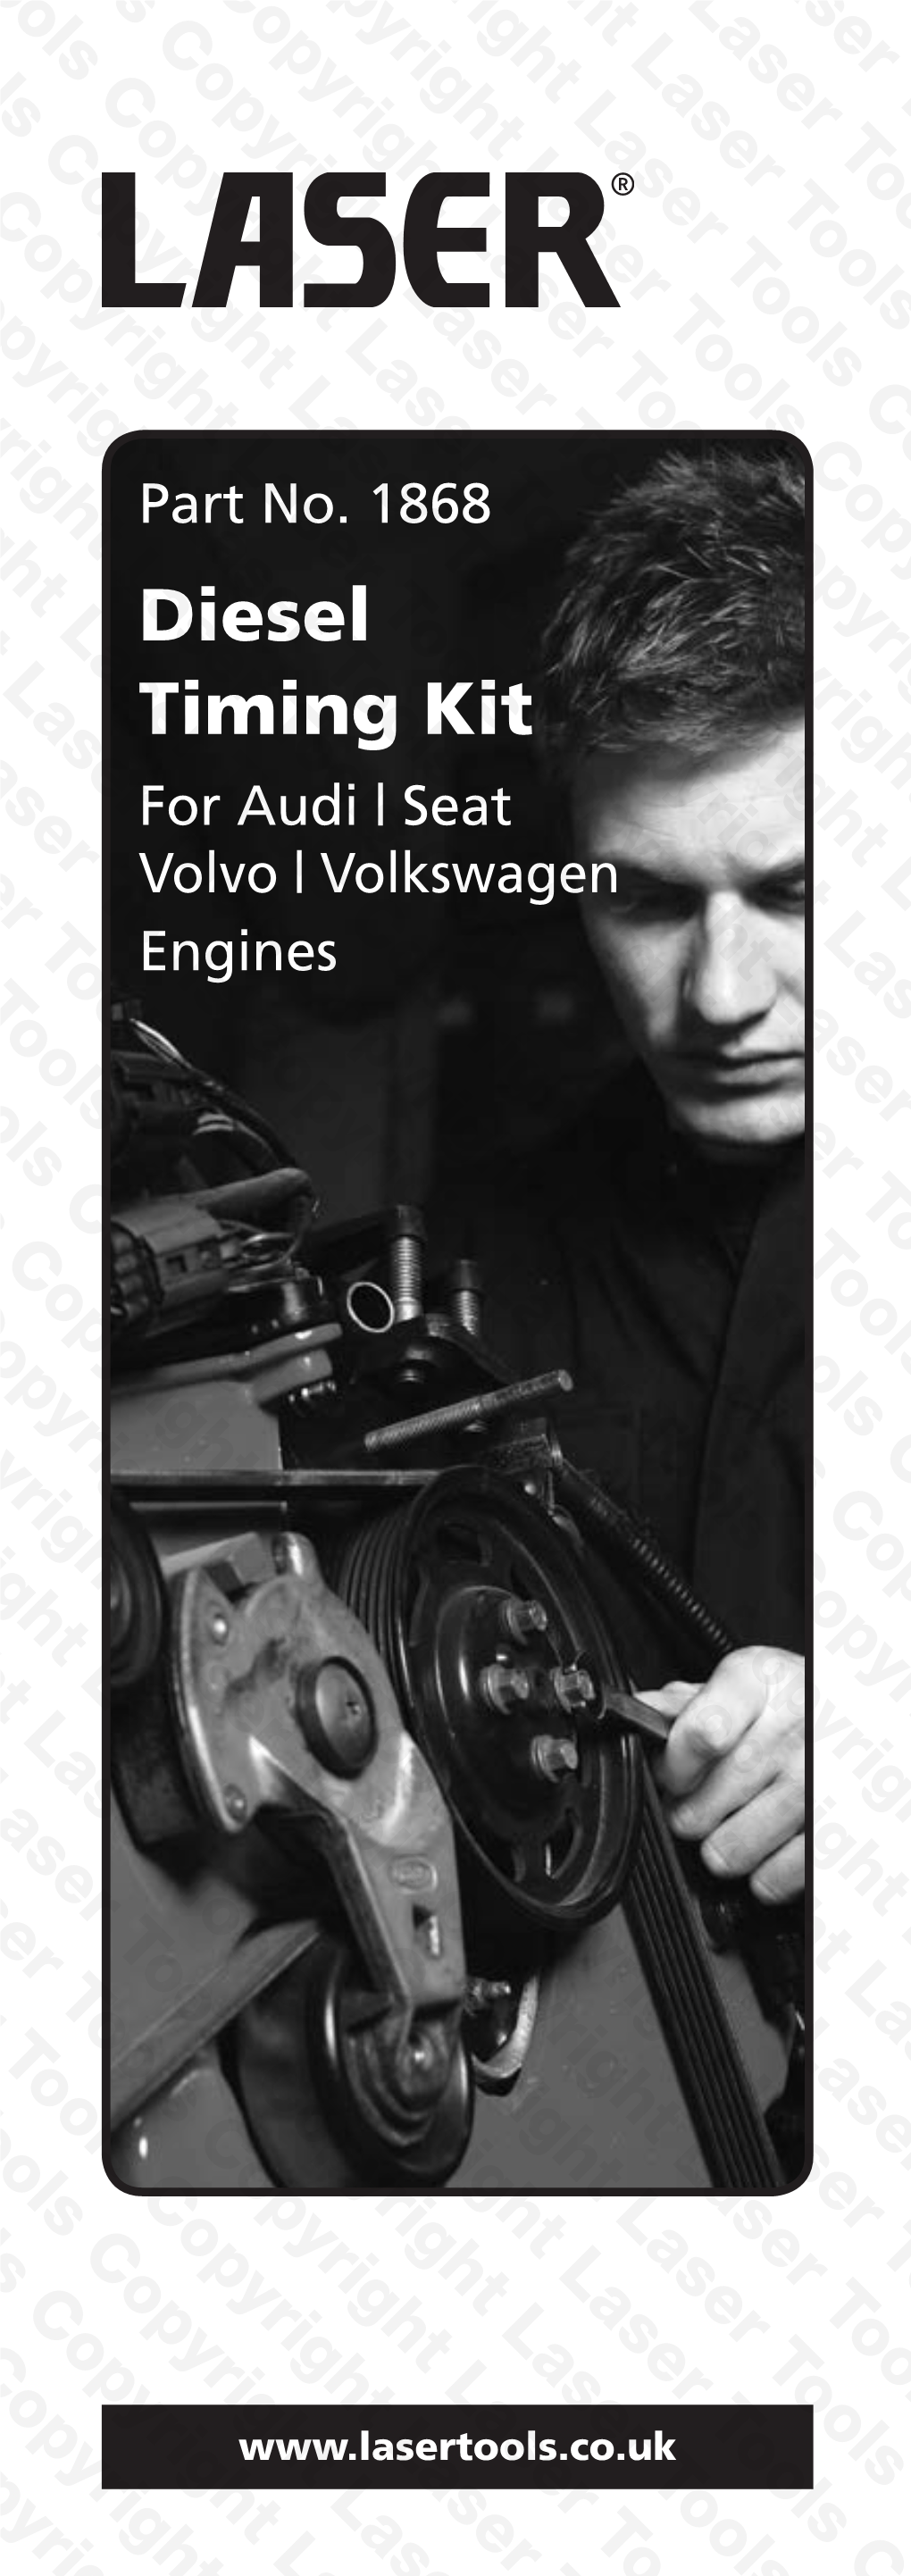 Diesel Timing Kit for Audi | Seat Volvo | Volkswagen Engines